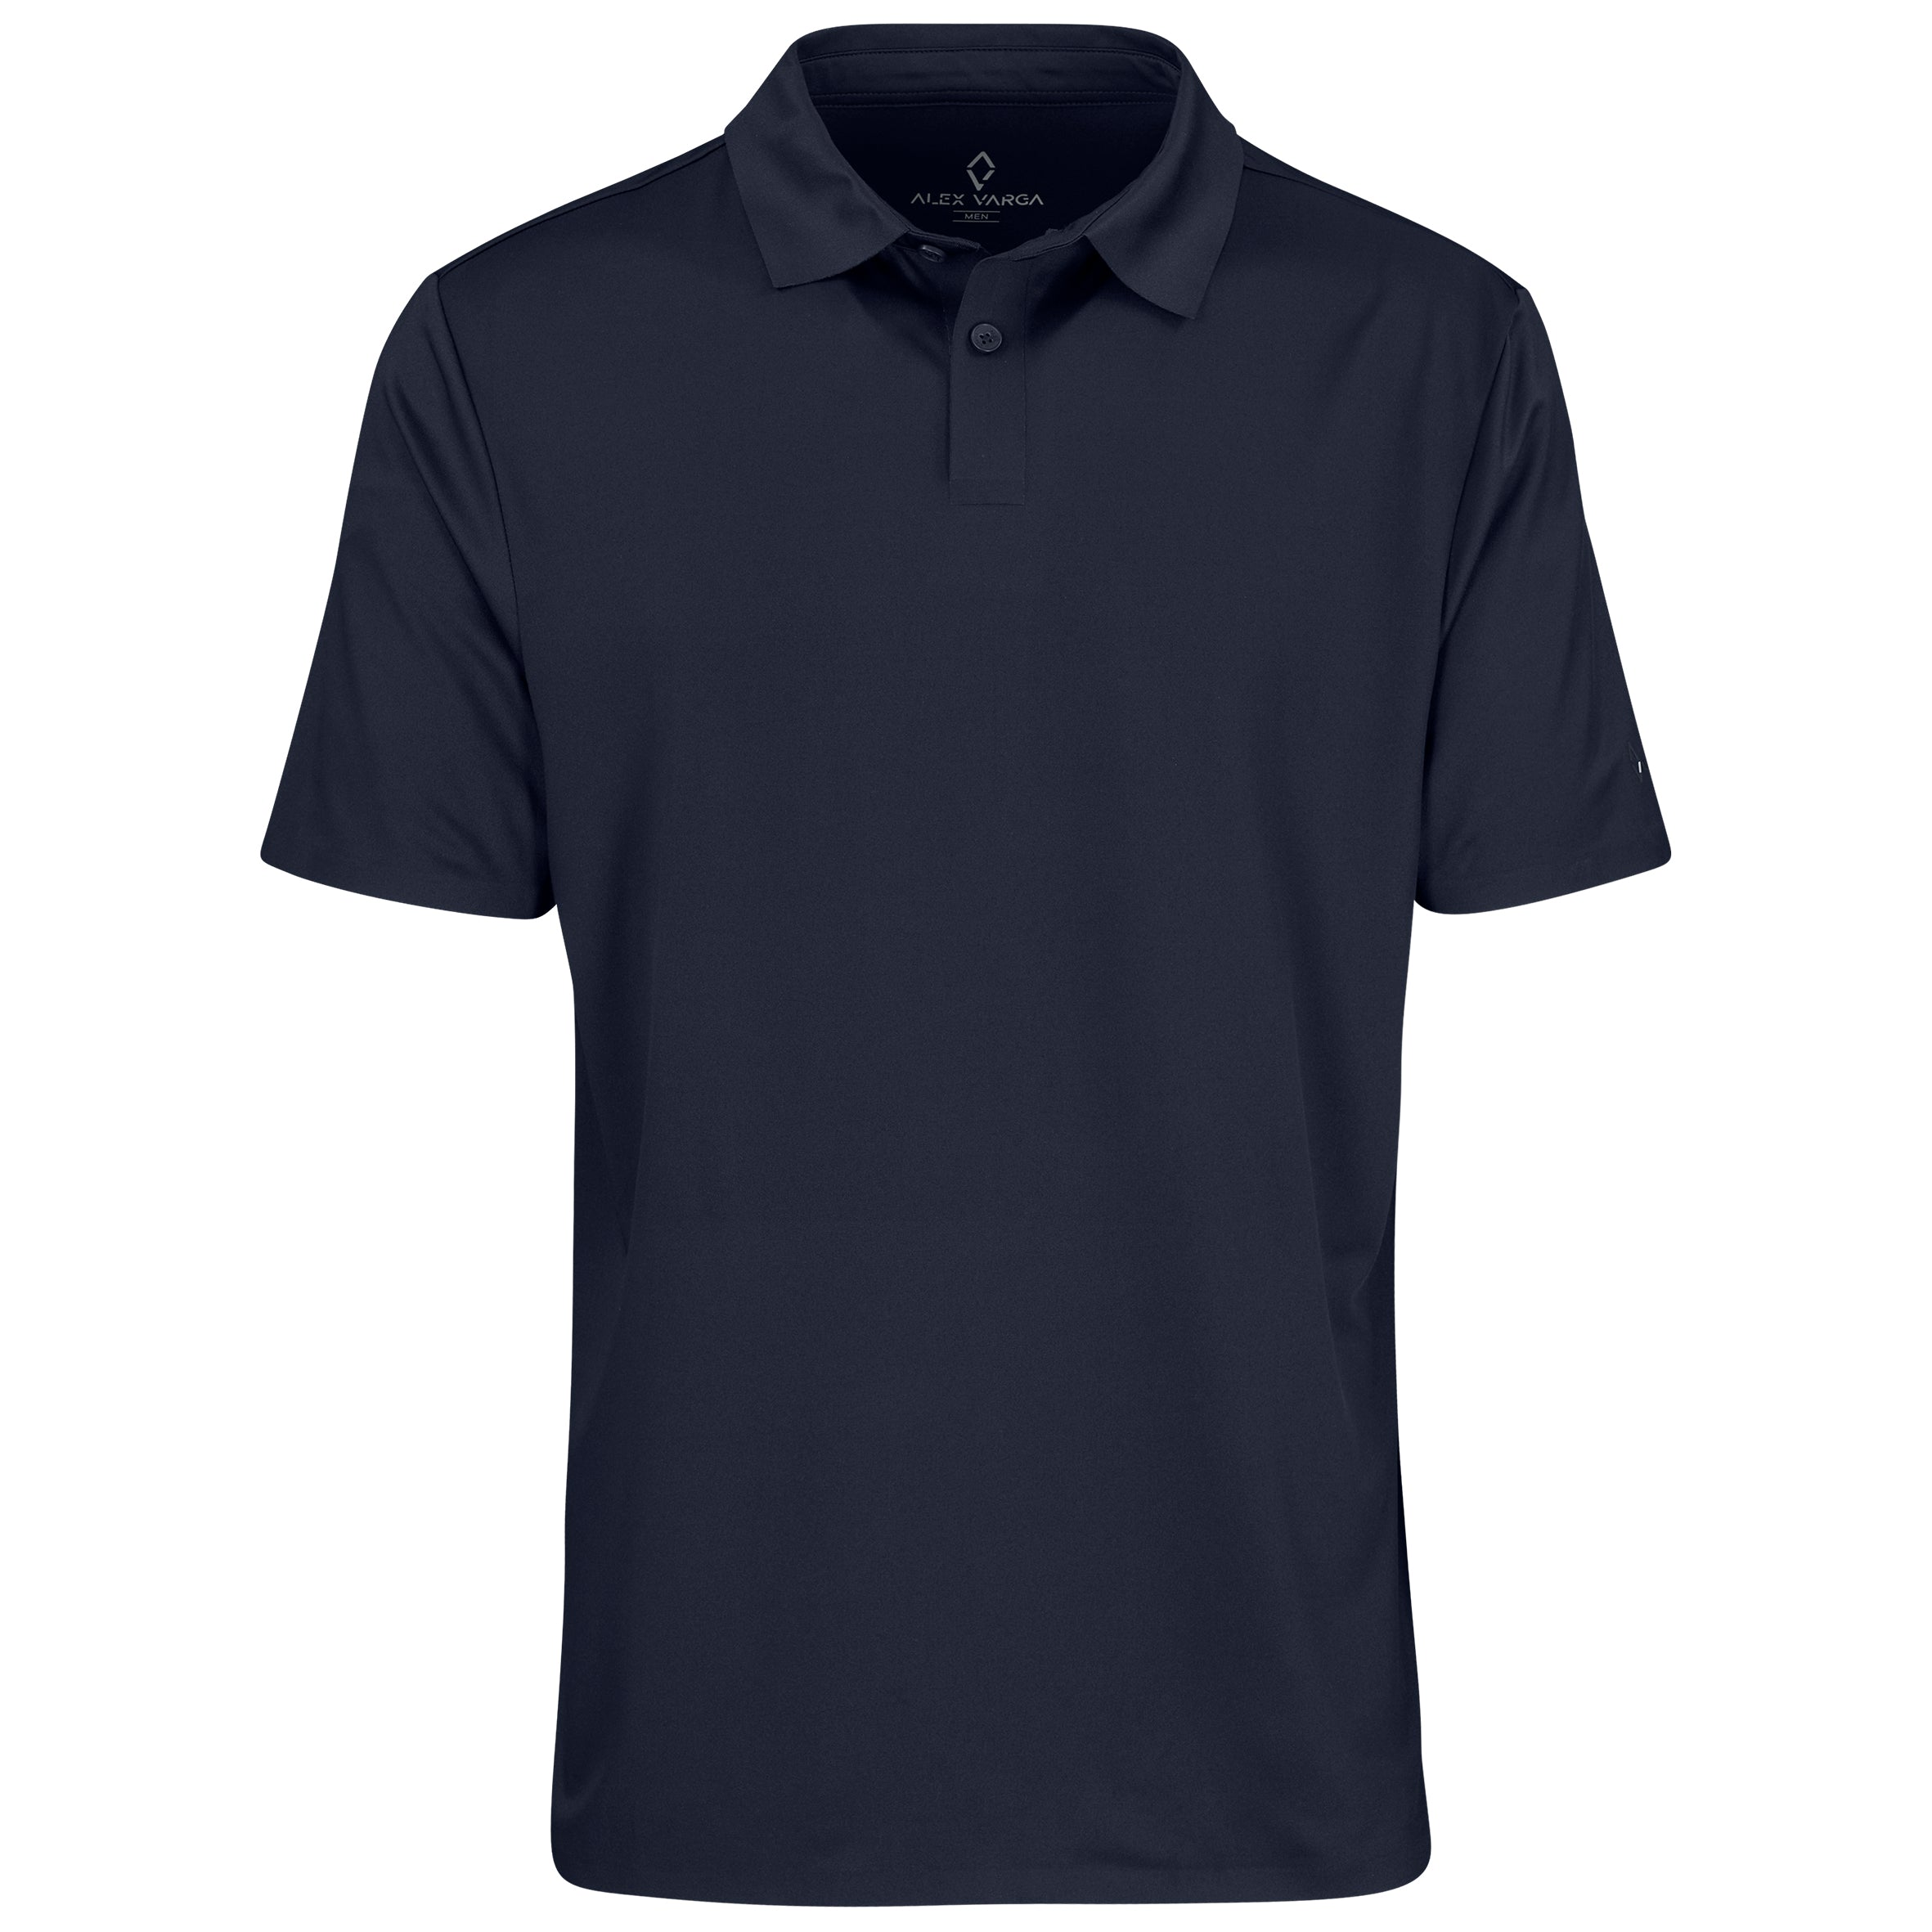 Mens Questana Seamless Golf Shirt L / Navy / N